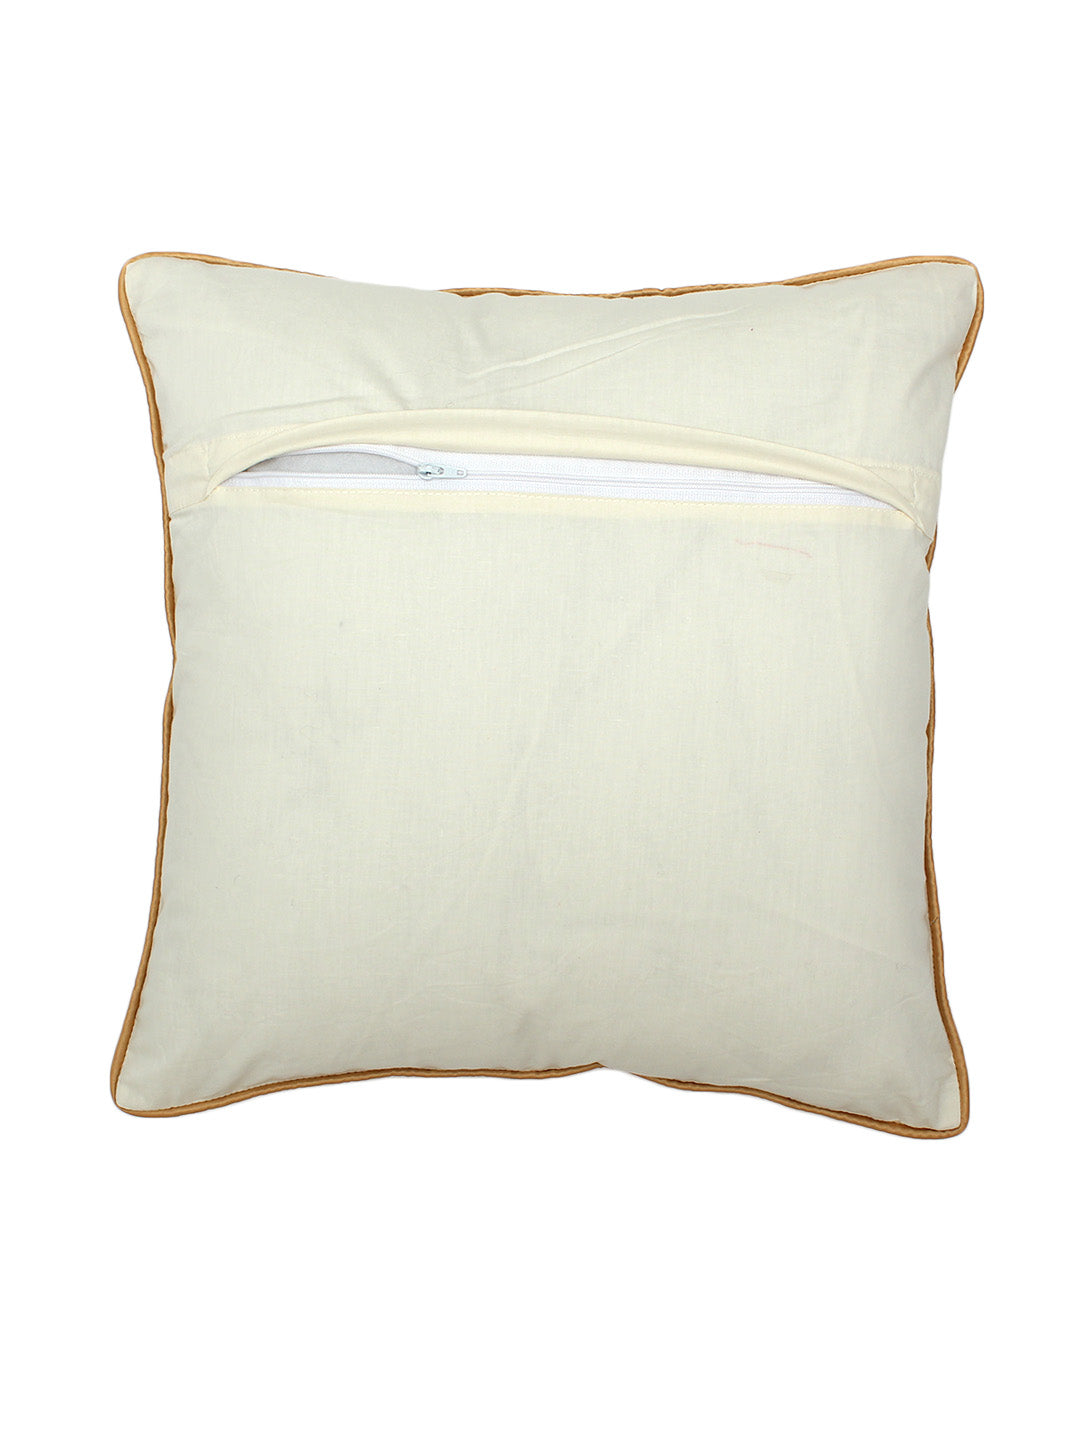 Chaupad Cushion Cover (White Gold)